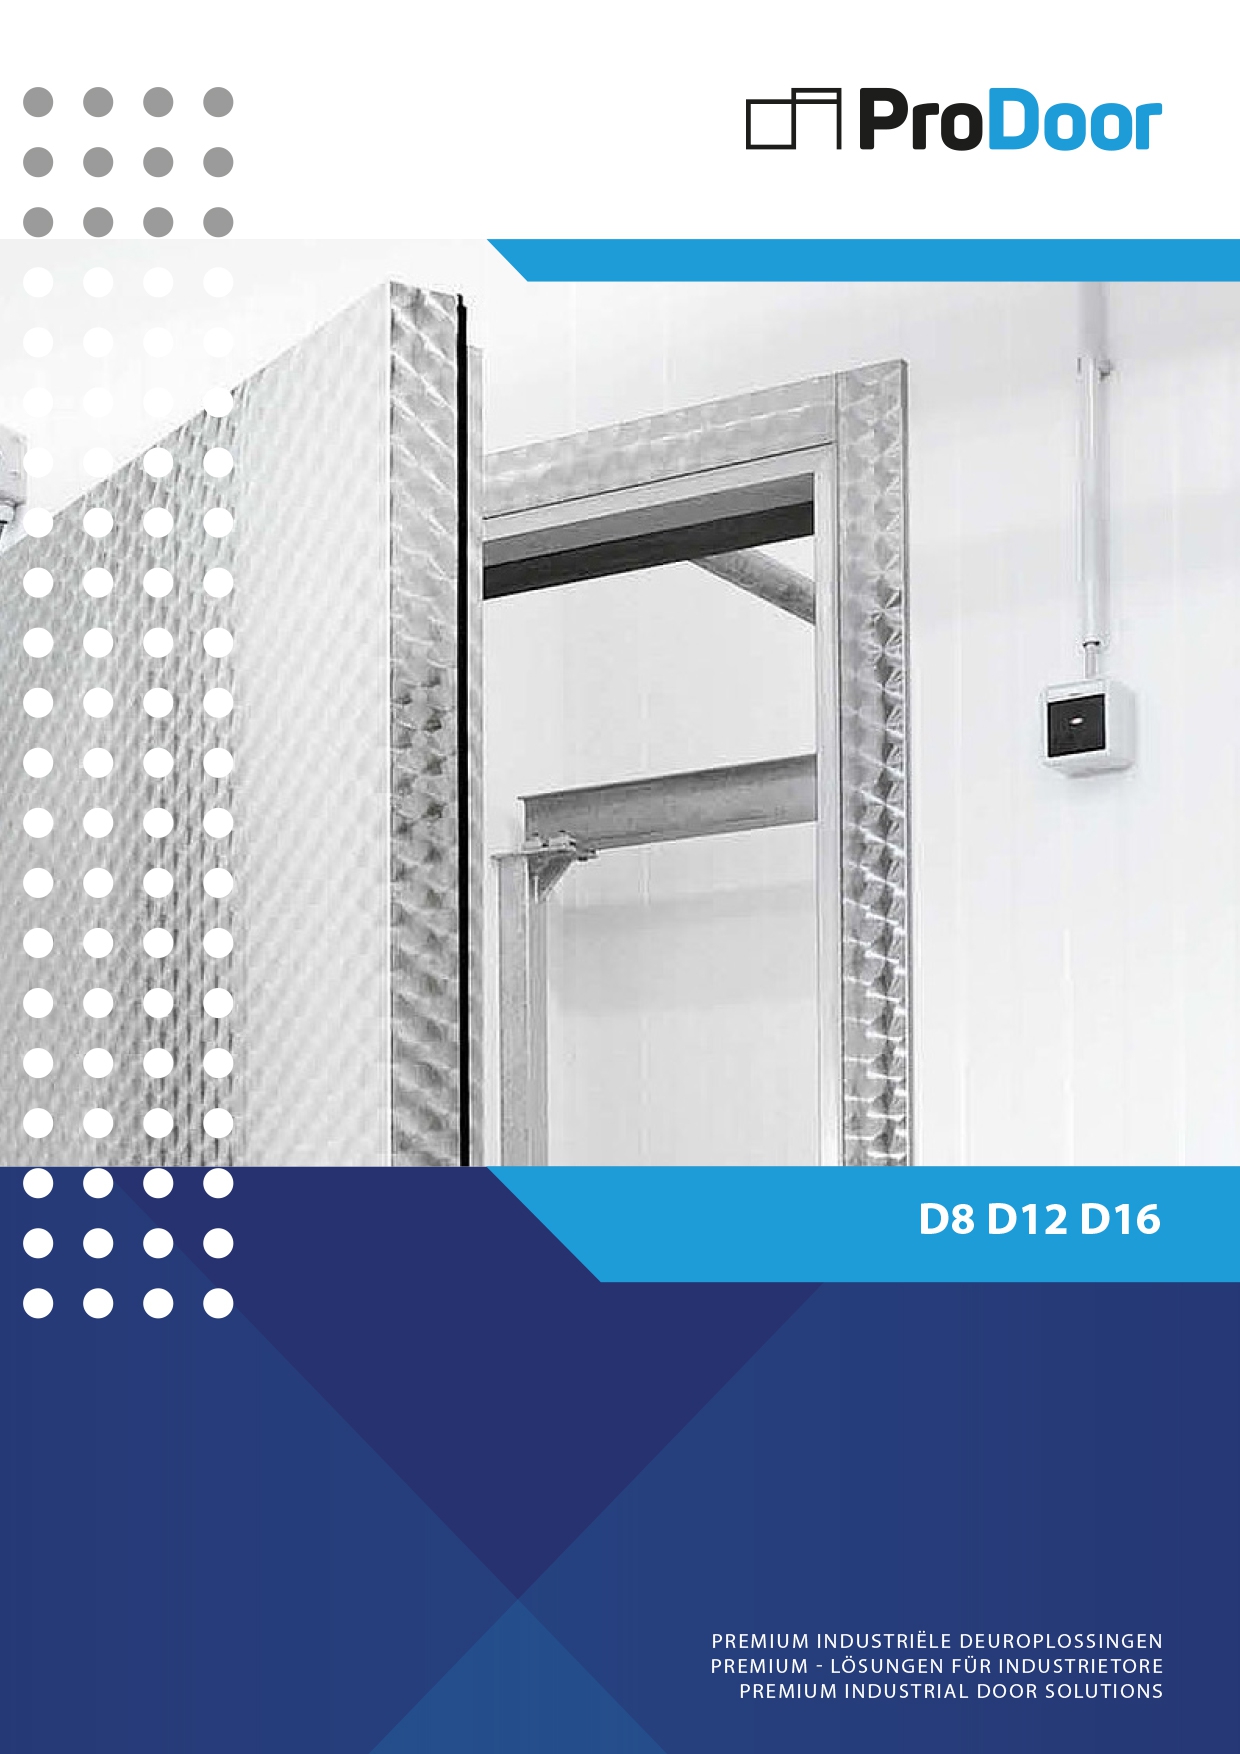 901_new-prodoor-cool-it-d8-d12-d16-hinged-doors-for-chillers-freezers-and-shock-freezers-deutsch-english-final-1_detailpagina_20210514213540.jpg